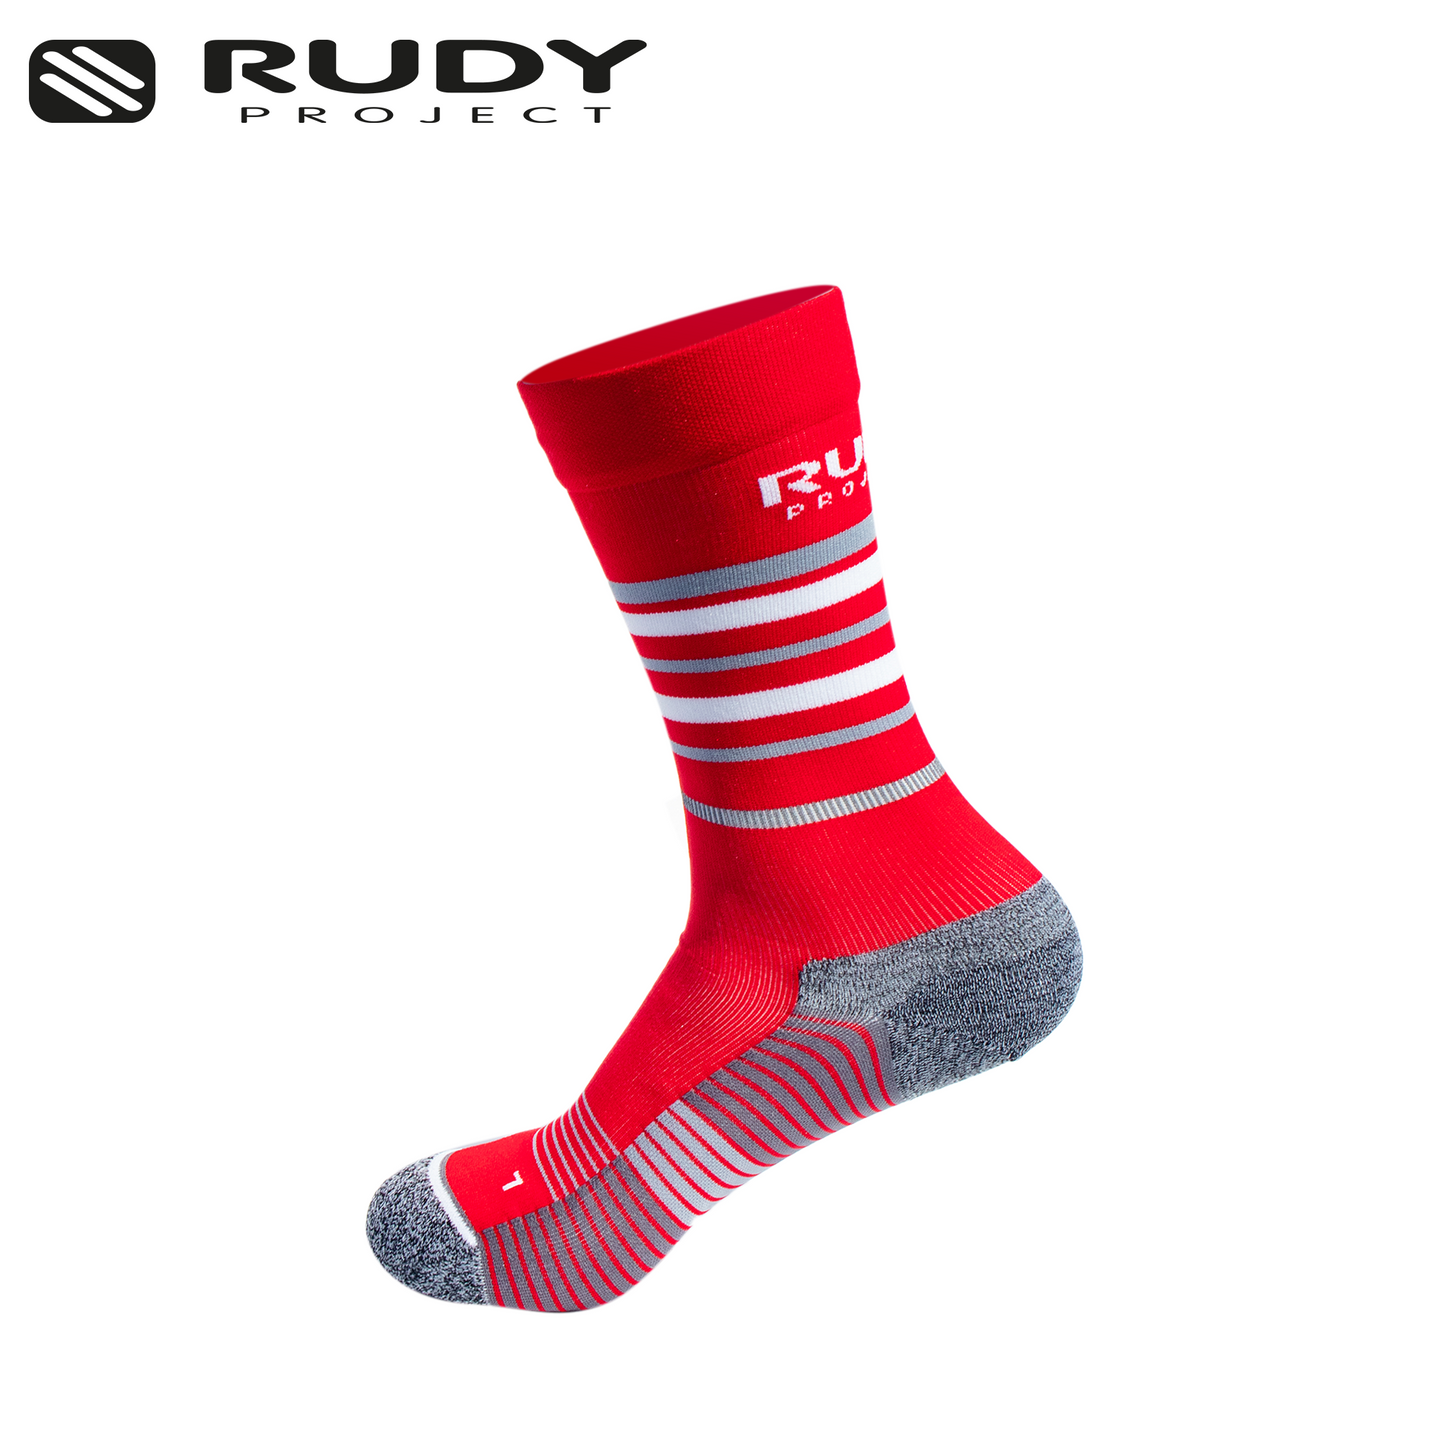 Long Cut Socks in Red